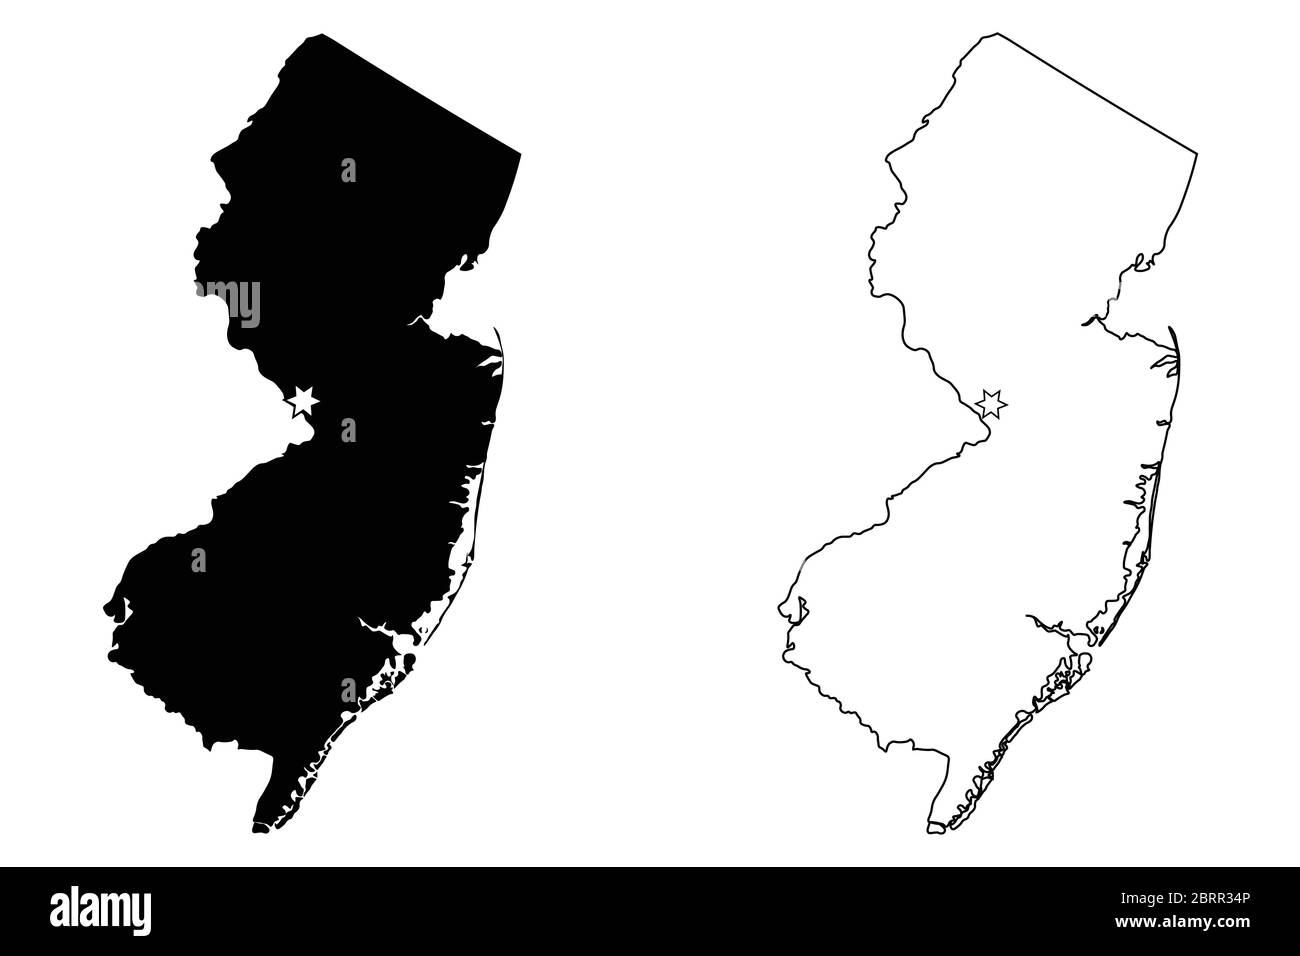 New Jersey, New Jersey, USA mit Capital City Star in Trenton. Schwarze Silhouette und Umriss isoliert auf weißem Hintergrund. EPS-Vektor Stock Vektor